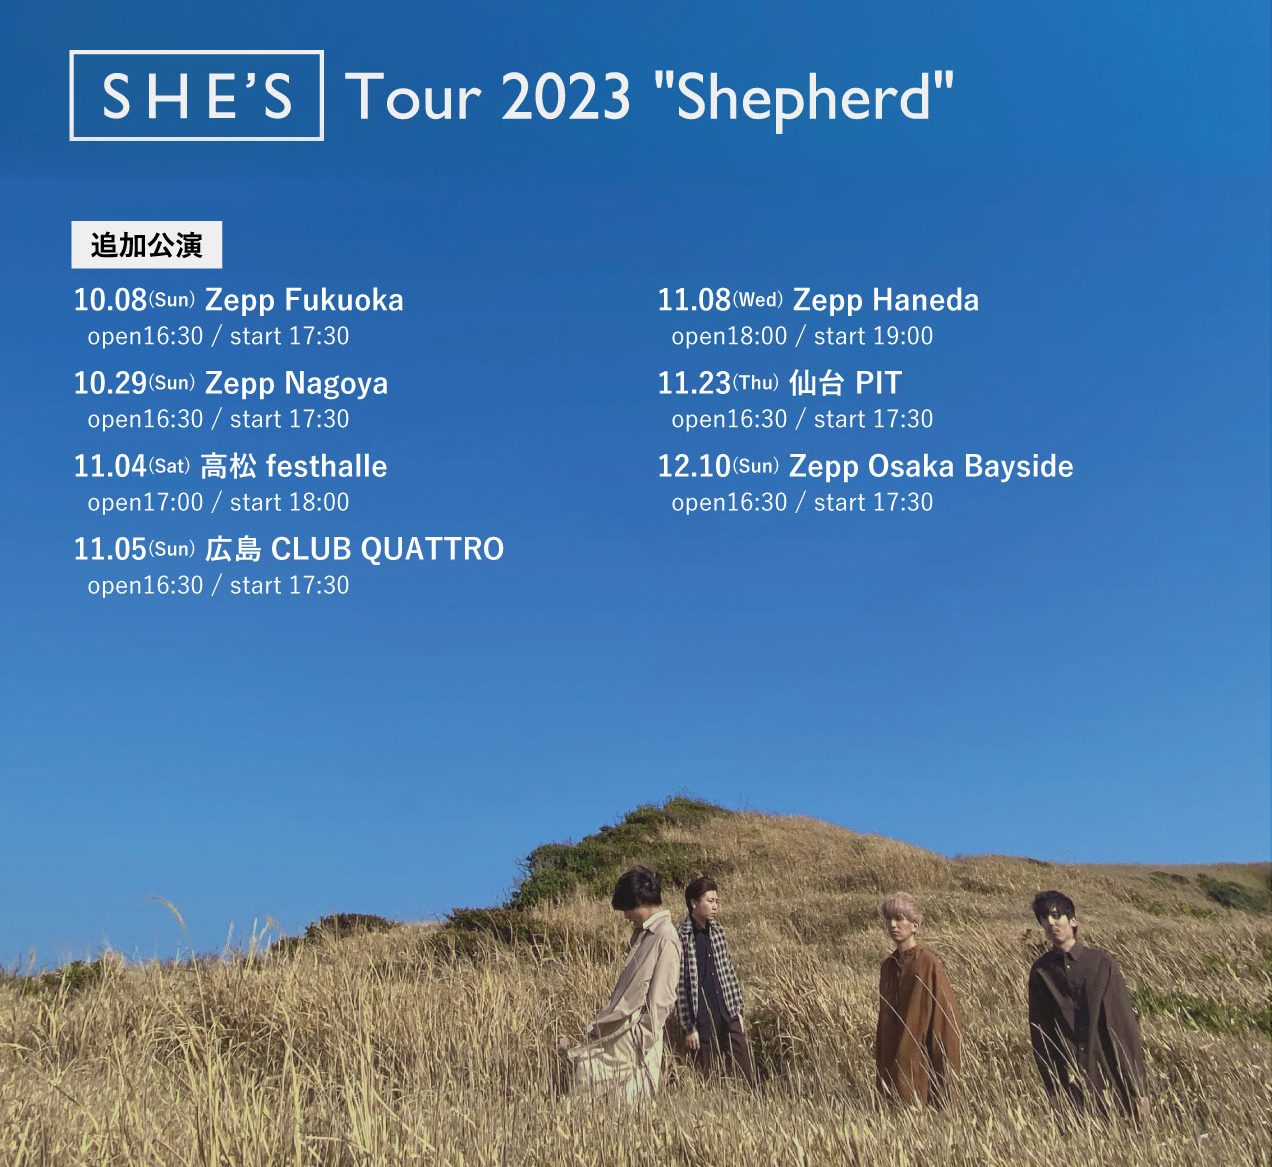 SHE’S Tour 2023 “Shepherd”